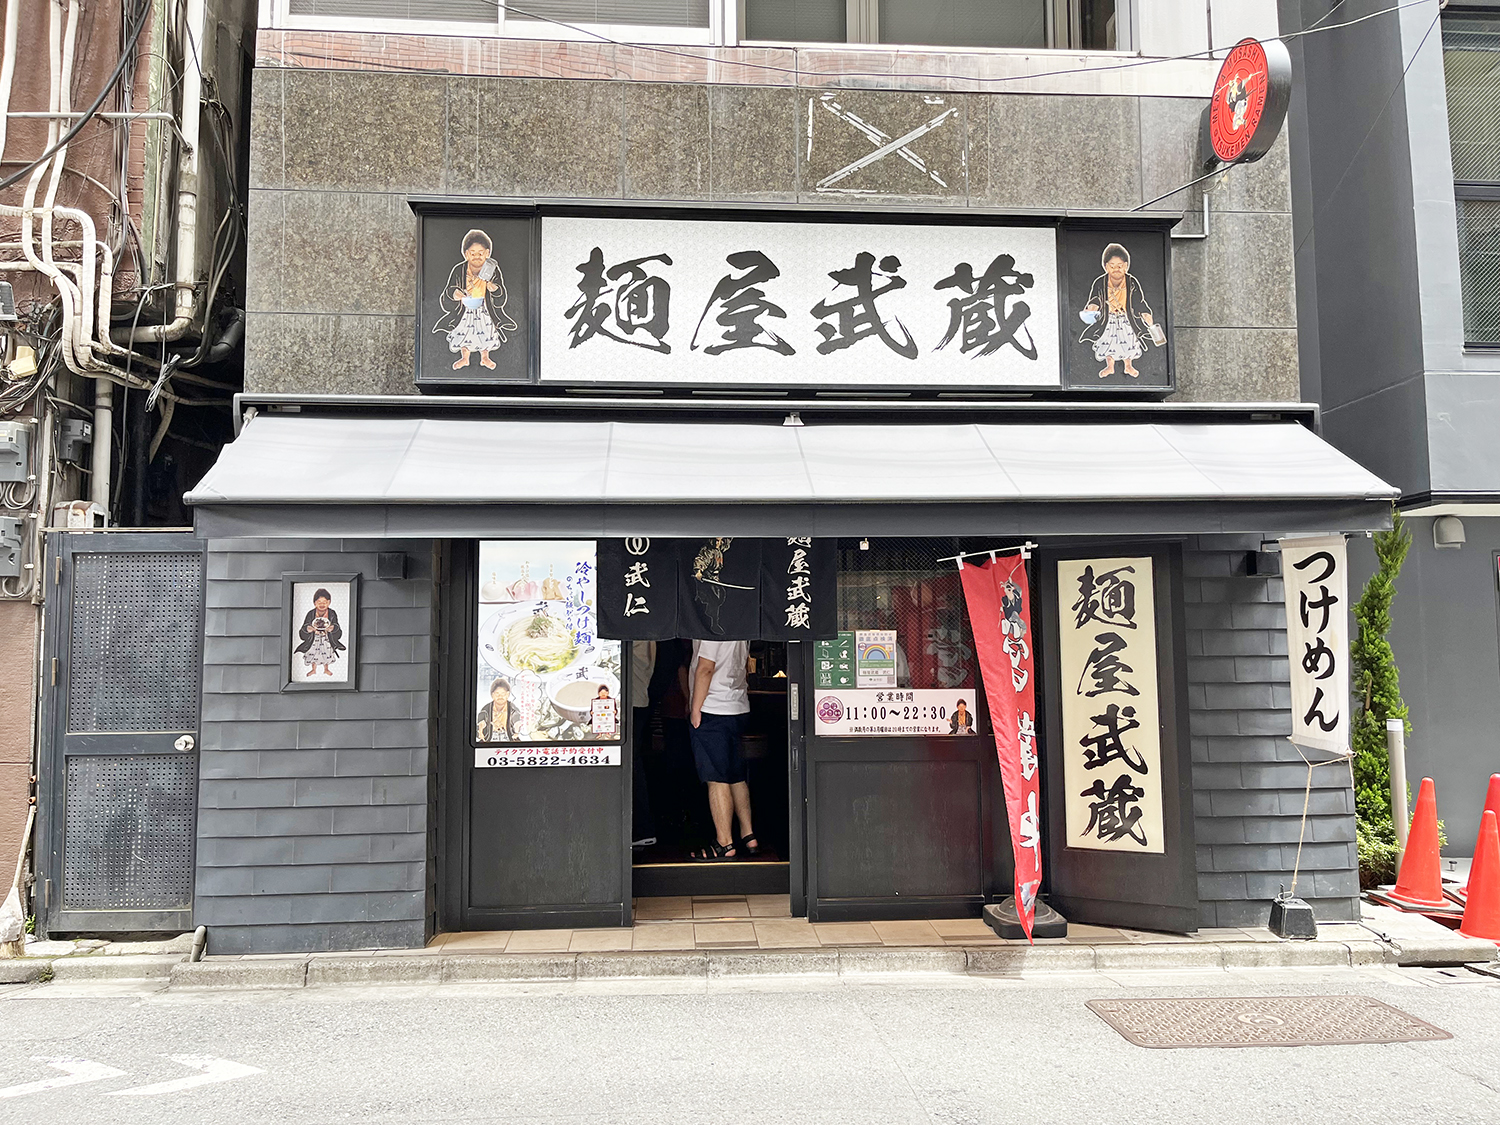 漆黒の日本家屋のような店構え。看板の横には宮本武蔵らしき人物も。